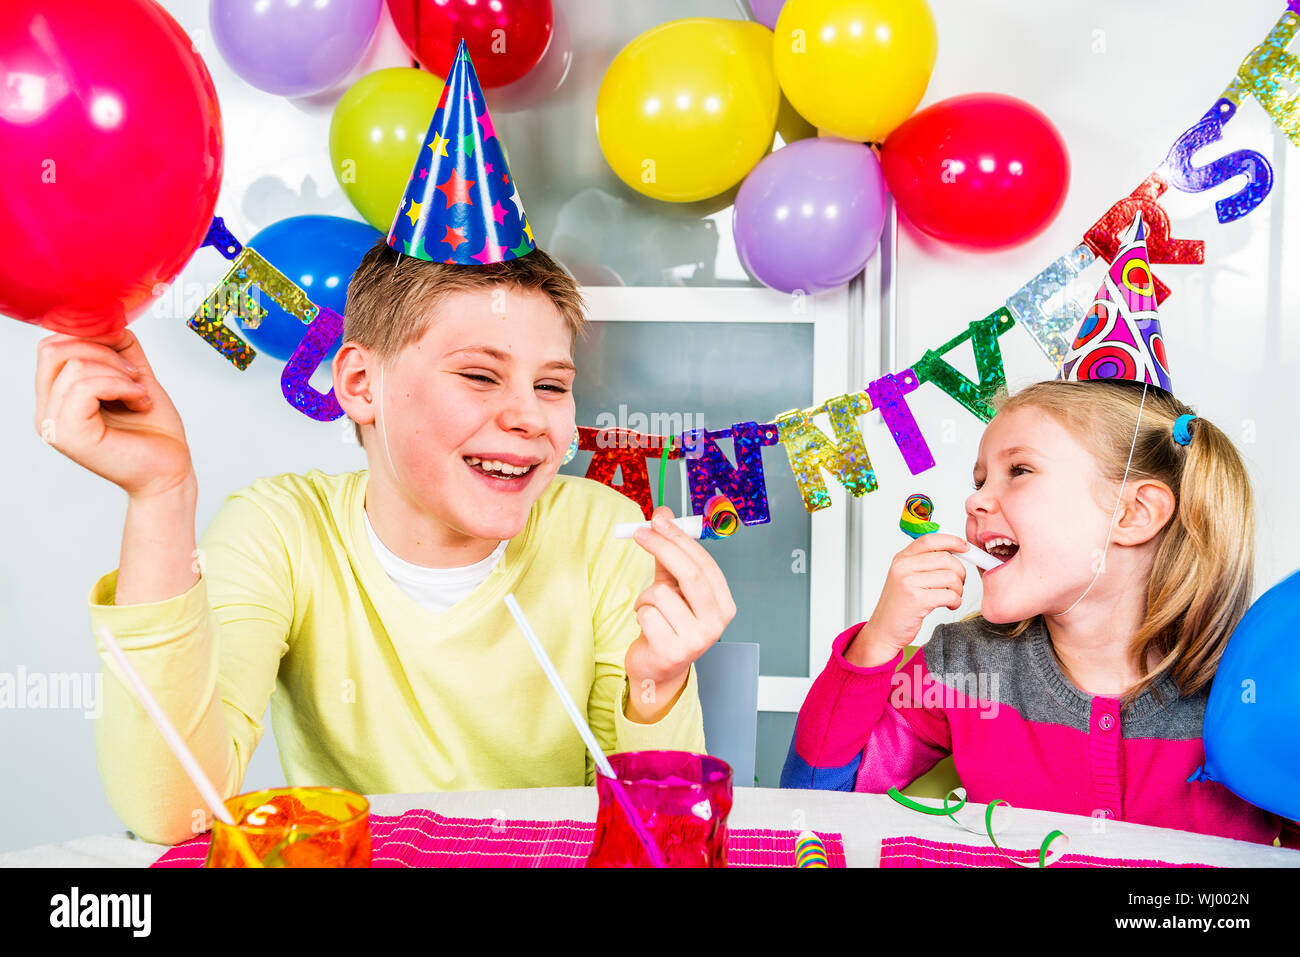 Heureux les petits enfants s'amusent dans une soirée d'anniversaire Banque D'Images